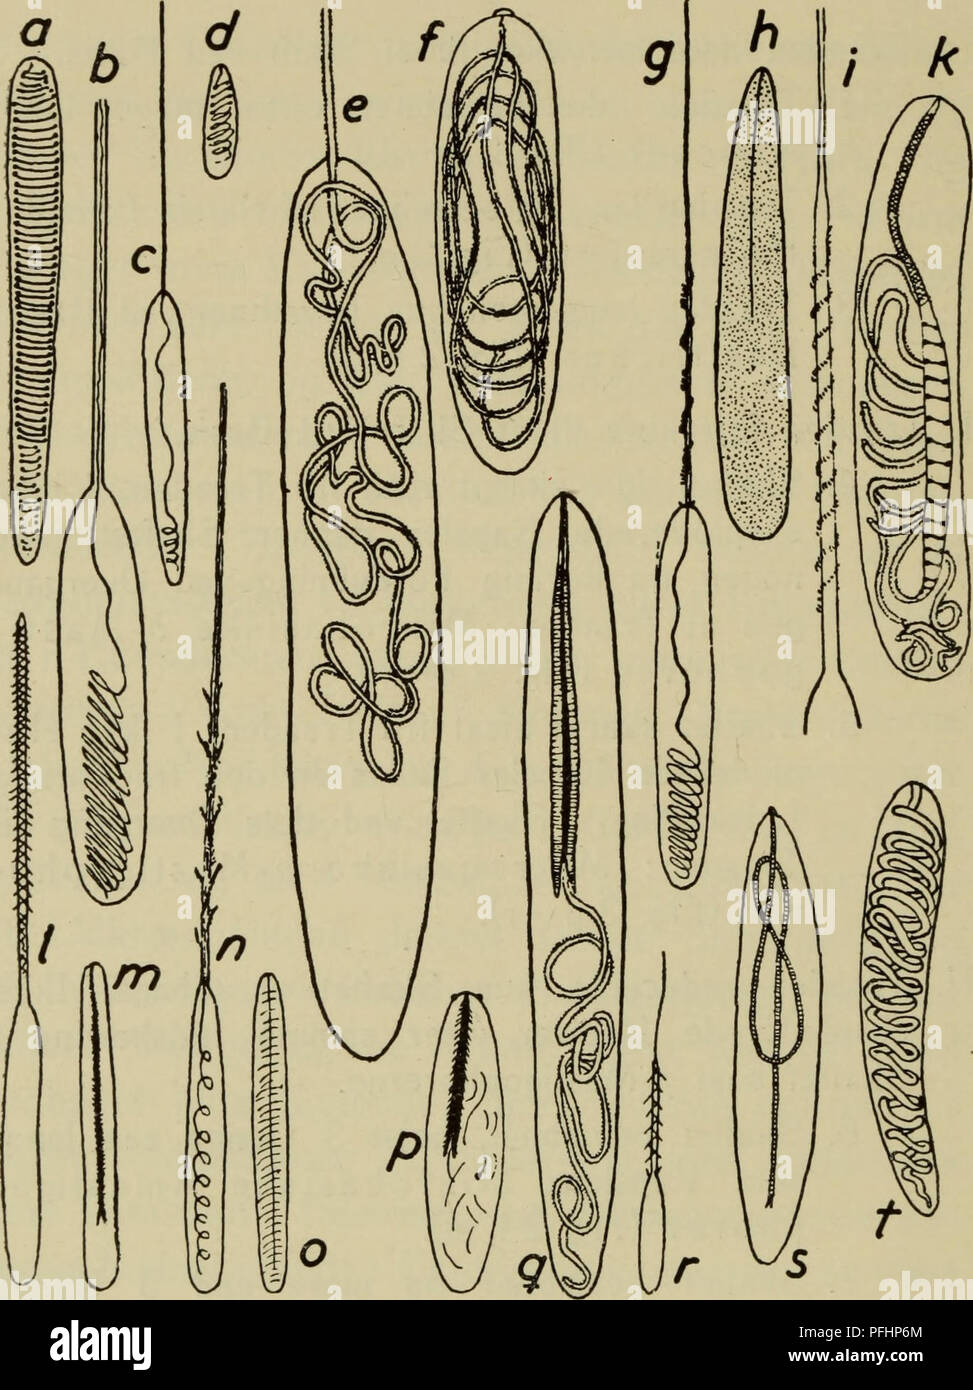 . Illustrerede haandbøger la faune ; den danske plus dyreverden... 16. Fig. 2. a-s Nematocyster ; a-d Atricher, un Protanthea, c af, simplex b af Cerianthus lloydii, d Kophobelemnon stelliferum af ; €, f, e Holotricher Lophelia pertusa af af f, Sideractis glacialis ; g-k&Z mikrobasiske Mastigophorer-gt ; Stomphia coccinea g, af, af h Actinostola callosa, /, k af Pachycerianthus multiplicatus ; /, mi- krobasiske Amastigophorer m, / Sargartiogeton viduatus af, af- gartiogeton m Sar undatus ; n, o Basitricher Octineon suecicum af ; p-v mikrobasiske Mastigophorer p-p, Rhodactis af af Loph sinensis, q Banque D'Images